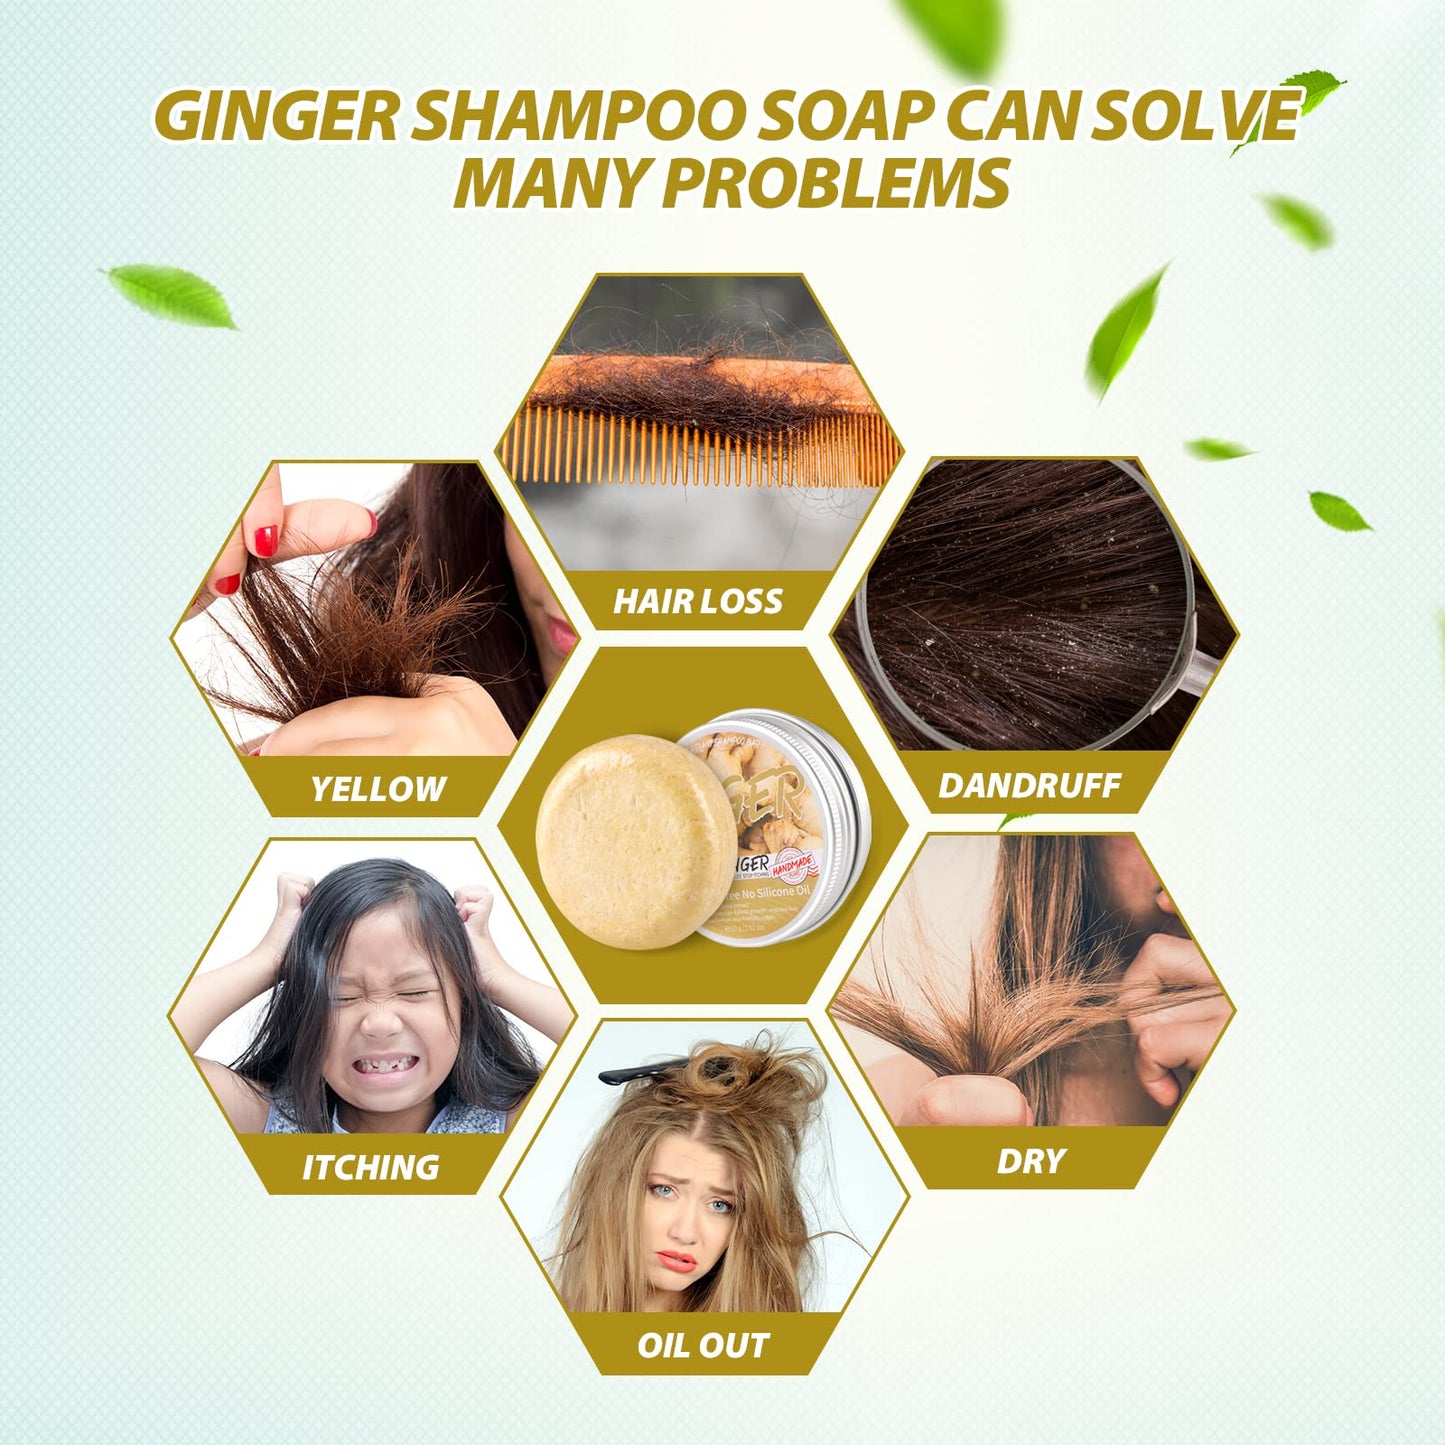 Zoreni 3 Pcs Ginger Hair Regrowth Shampoo Bar, Anti Hair Loss Ginger Shampoo Soap, Natural Organic Ginger Shampoo Bar Promotes Hair Growth, Anti-dandruff and Anti-itching Ginger Bar Soap